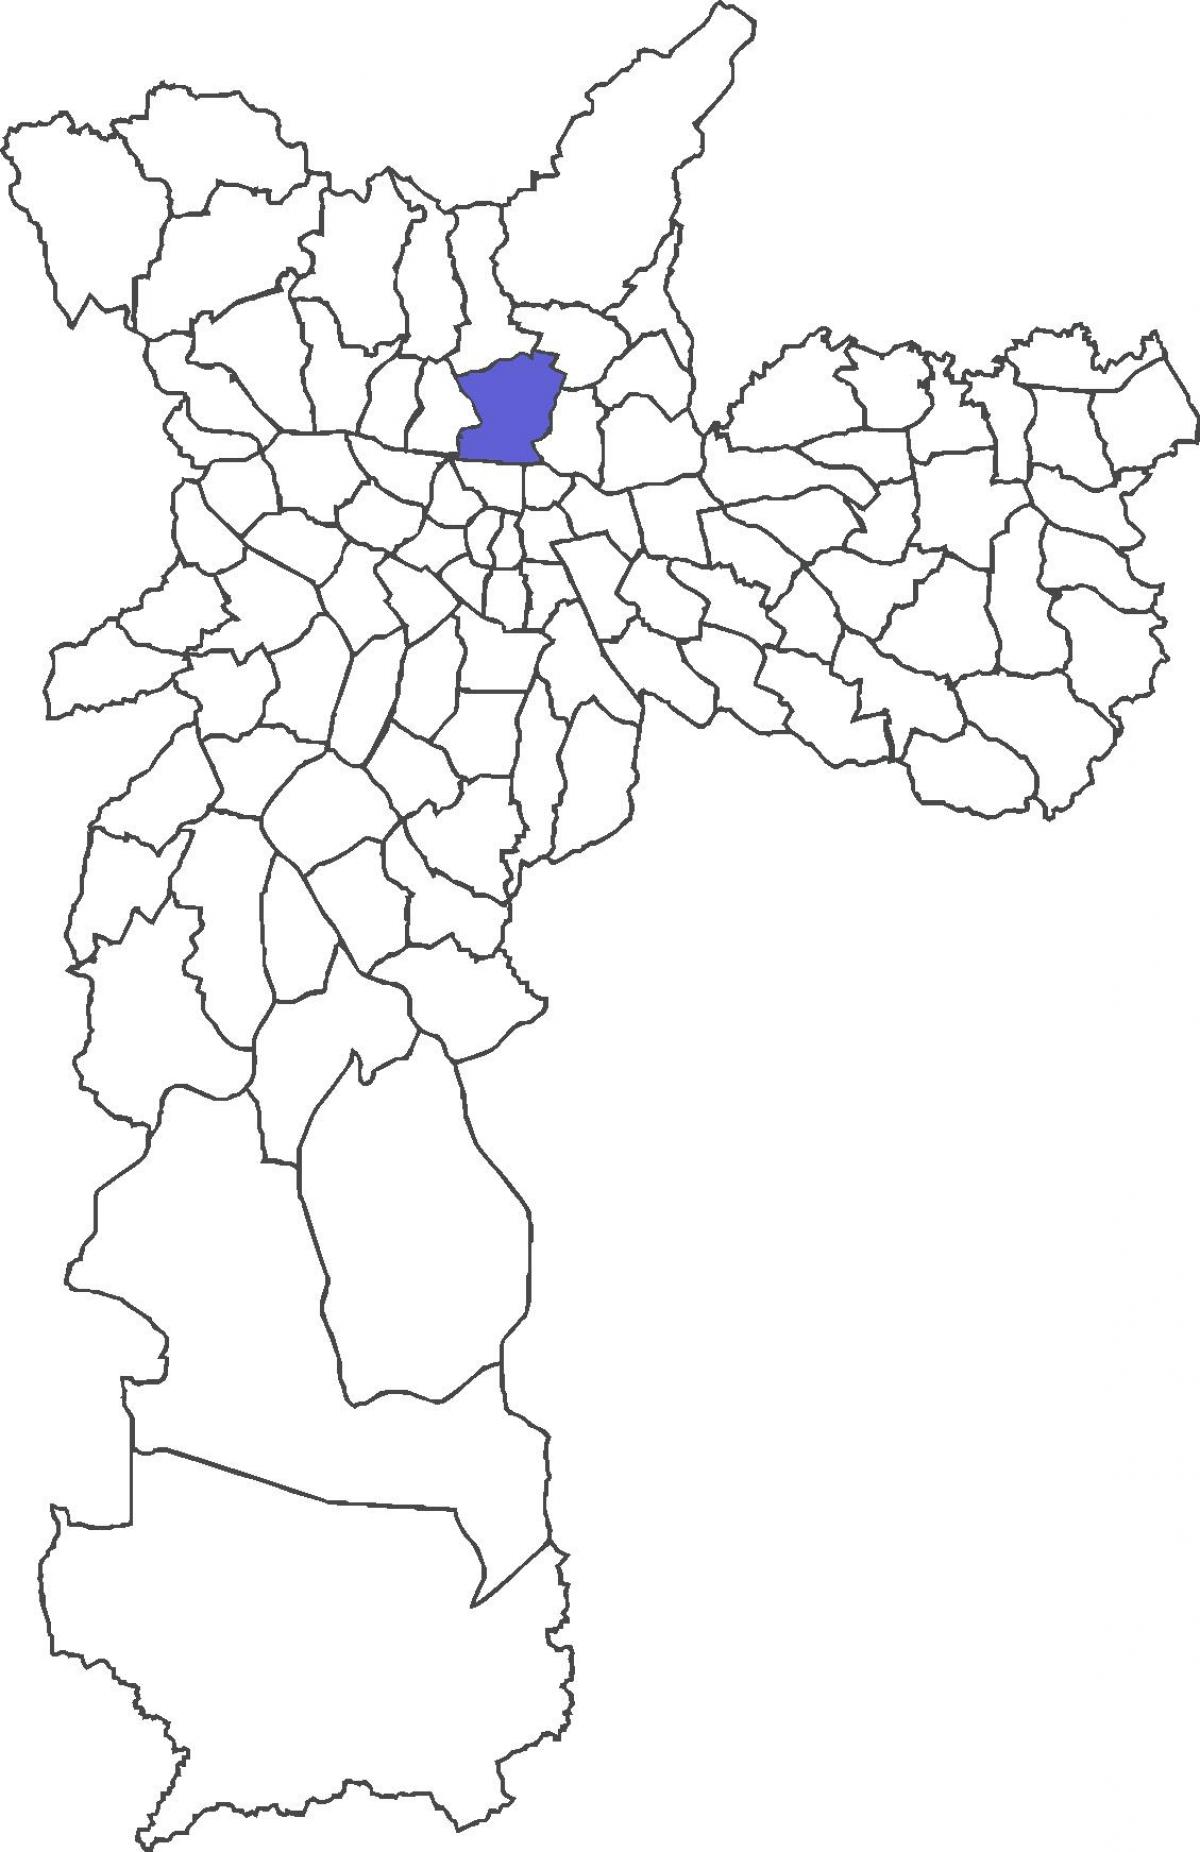 মানচিত্র Santana জেলা